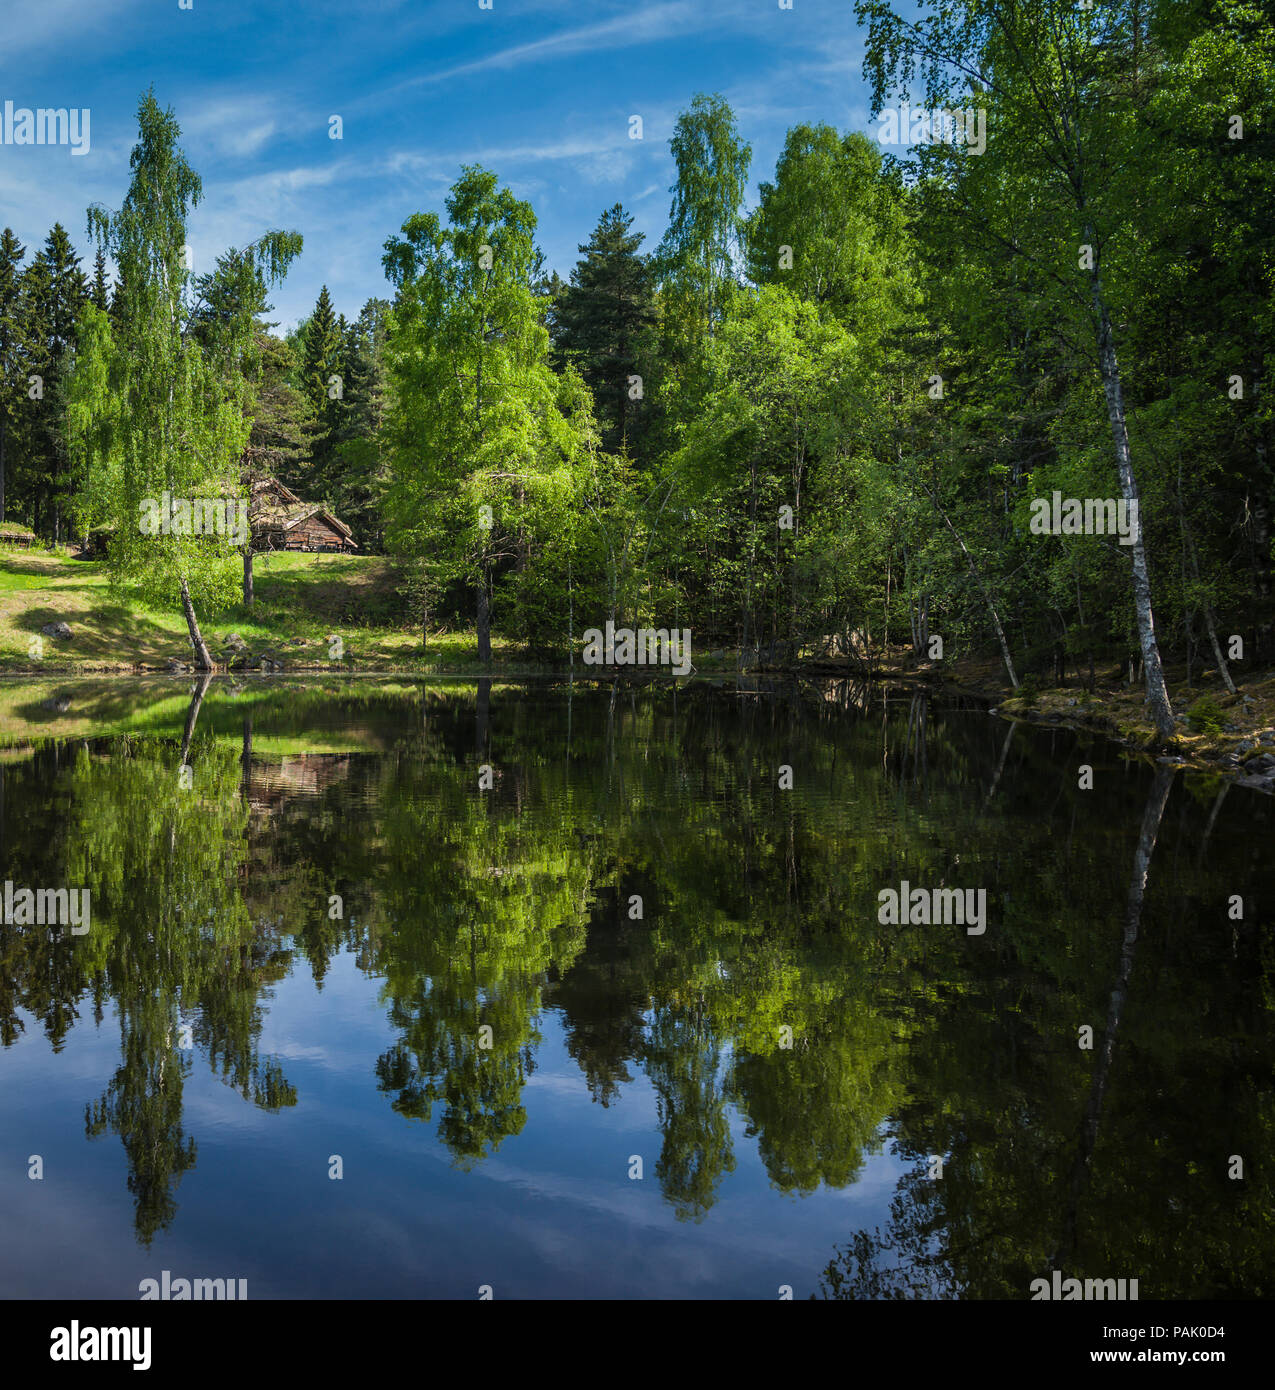 Typisch norwegische Landschaft in Lillehammer, Norwegen. Stockfoto